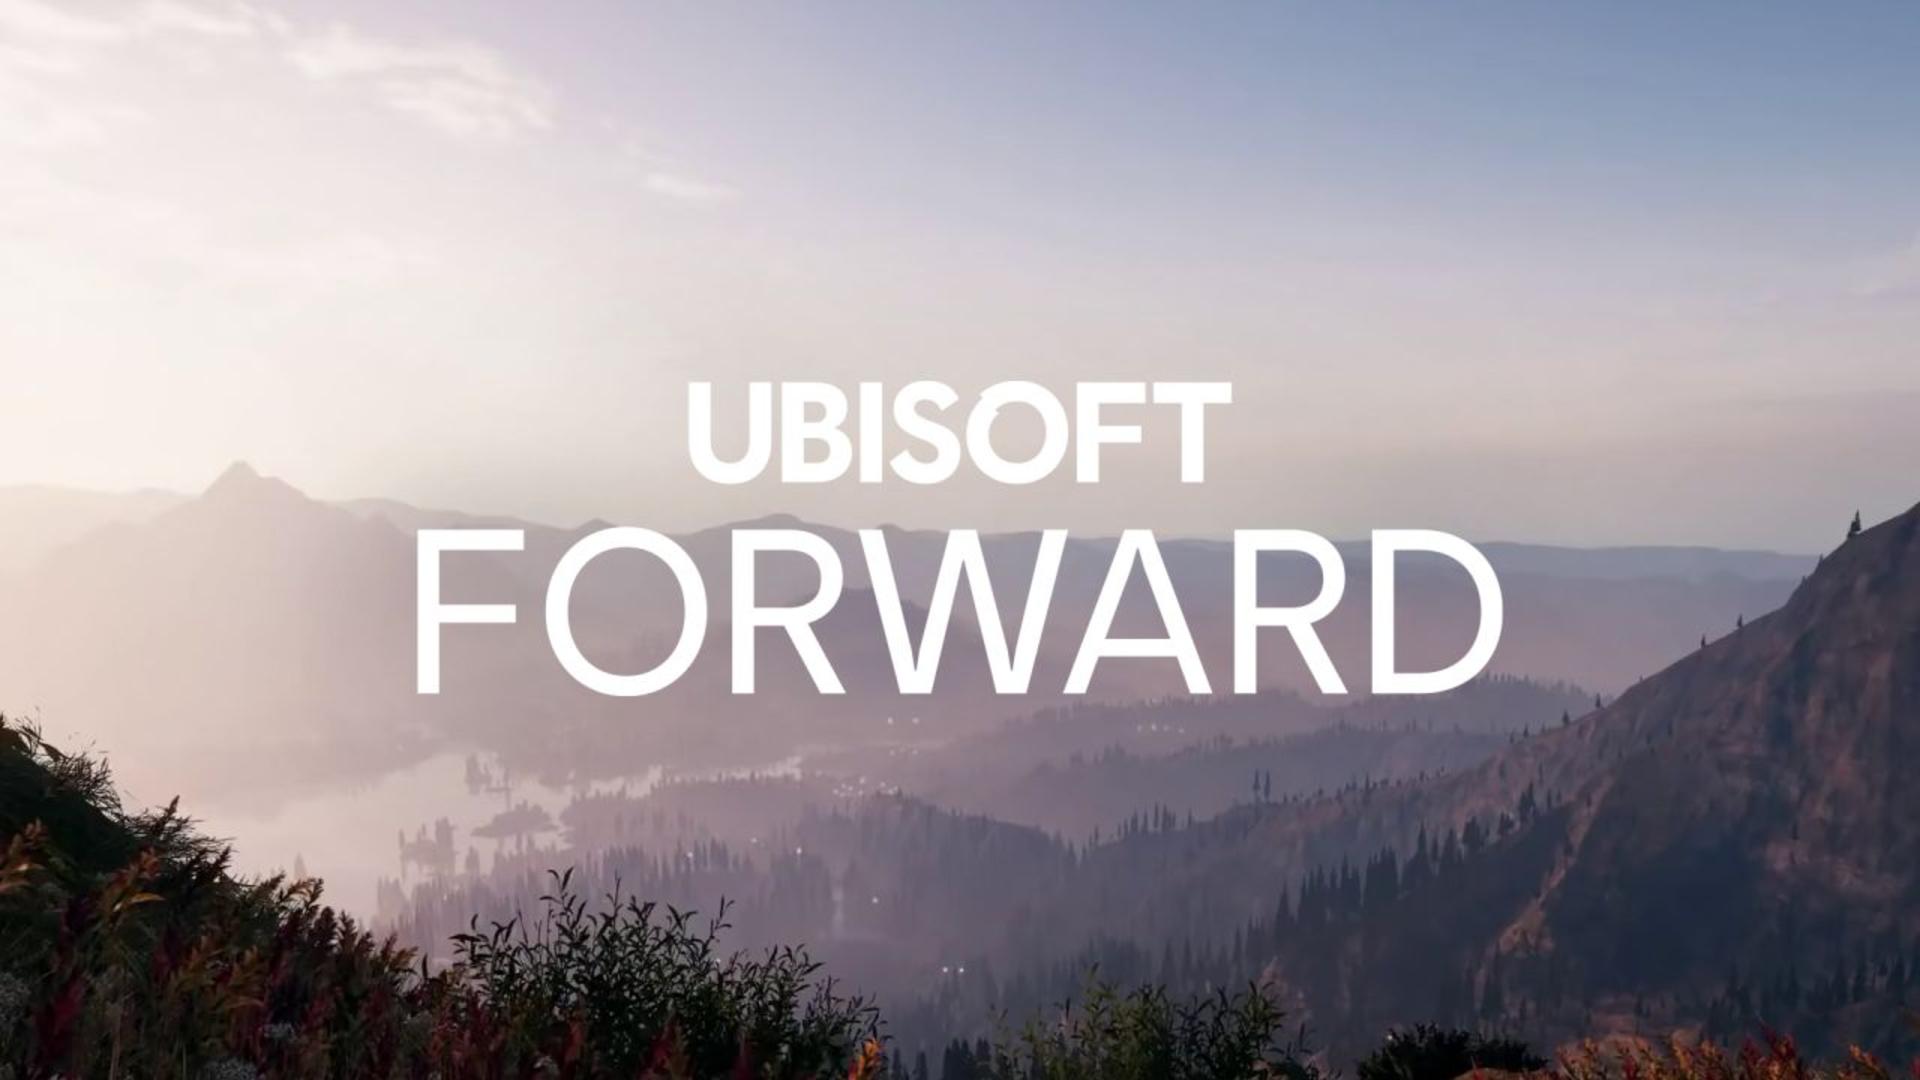 Ubisoft forward será o evento online em julho | f19f21a1 ubisoft forward | married games notícias | ubisoft forward